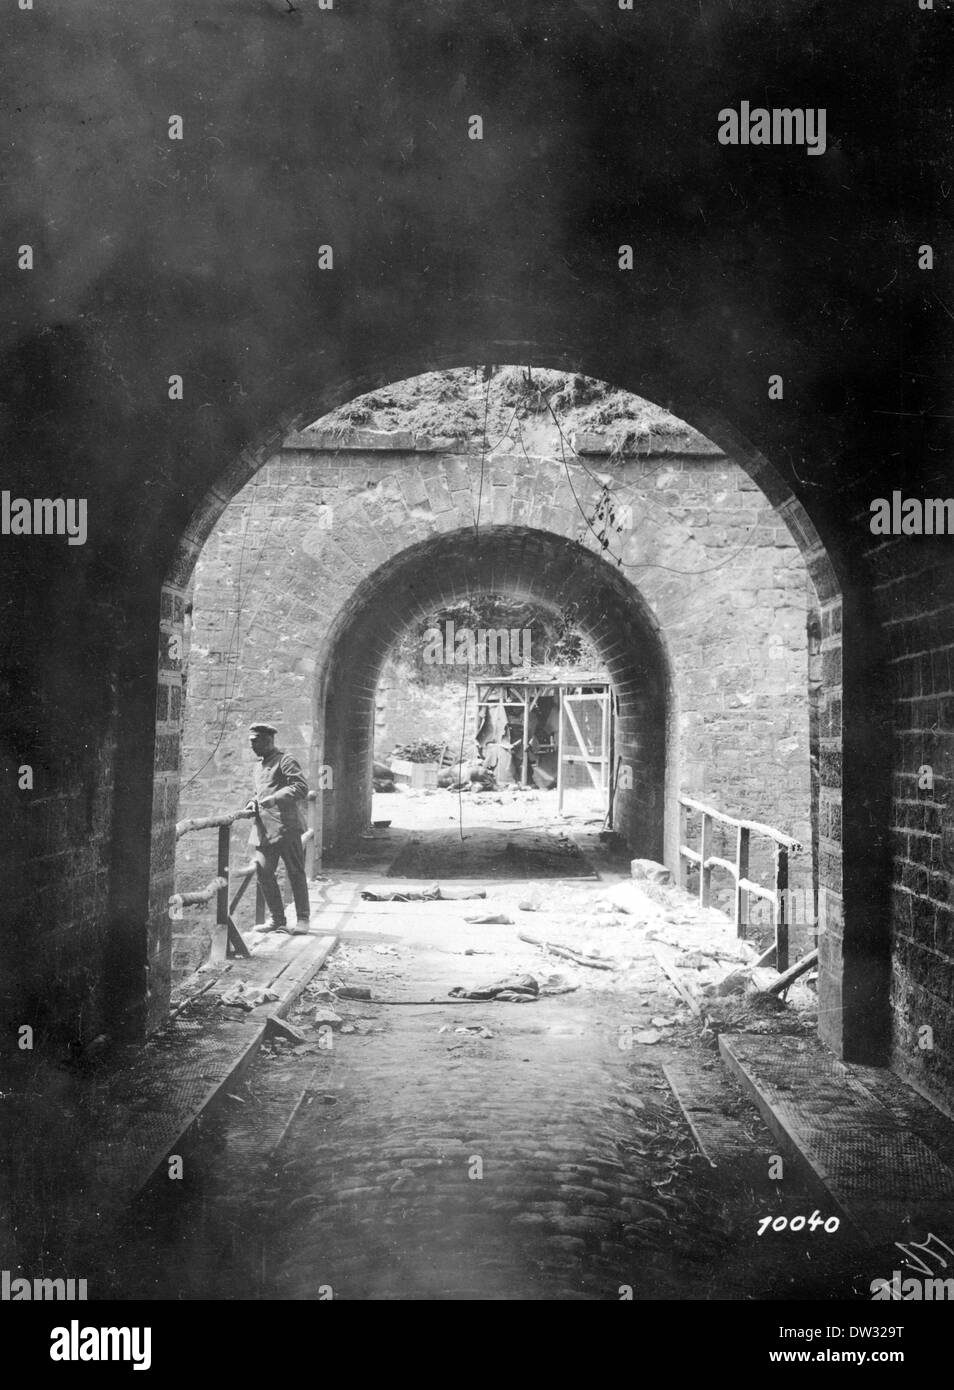 Das zerstörte Fort de Conde an der Westfront im ersten Weltkrieg in der Nähe von Soissons, Frankreich, 1918. Foto: Berliner Verlag / Archiv - kein Draht-SERVICE Stockfoto